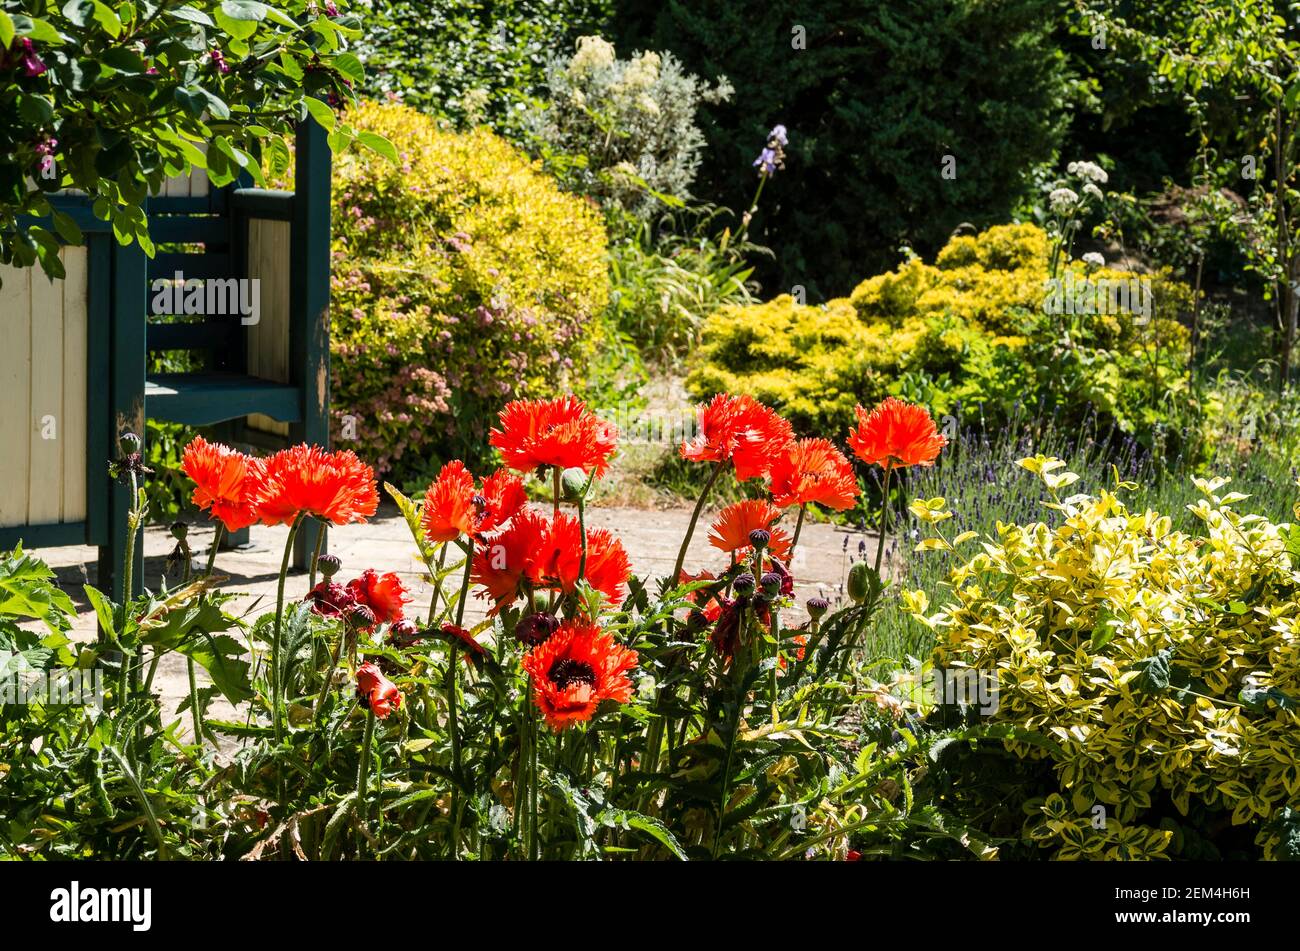 Des coquelicots rouge vif et accrocheurs de Papaver orientale Turkenlouis grandissent Un lit herbacé mixte dans un jardin anglais en juin Banque D'Images